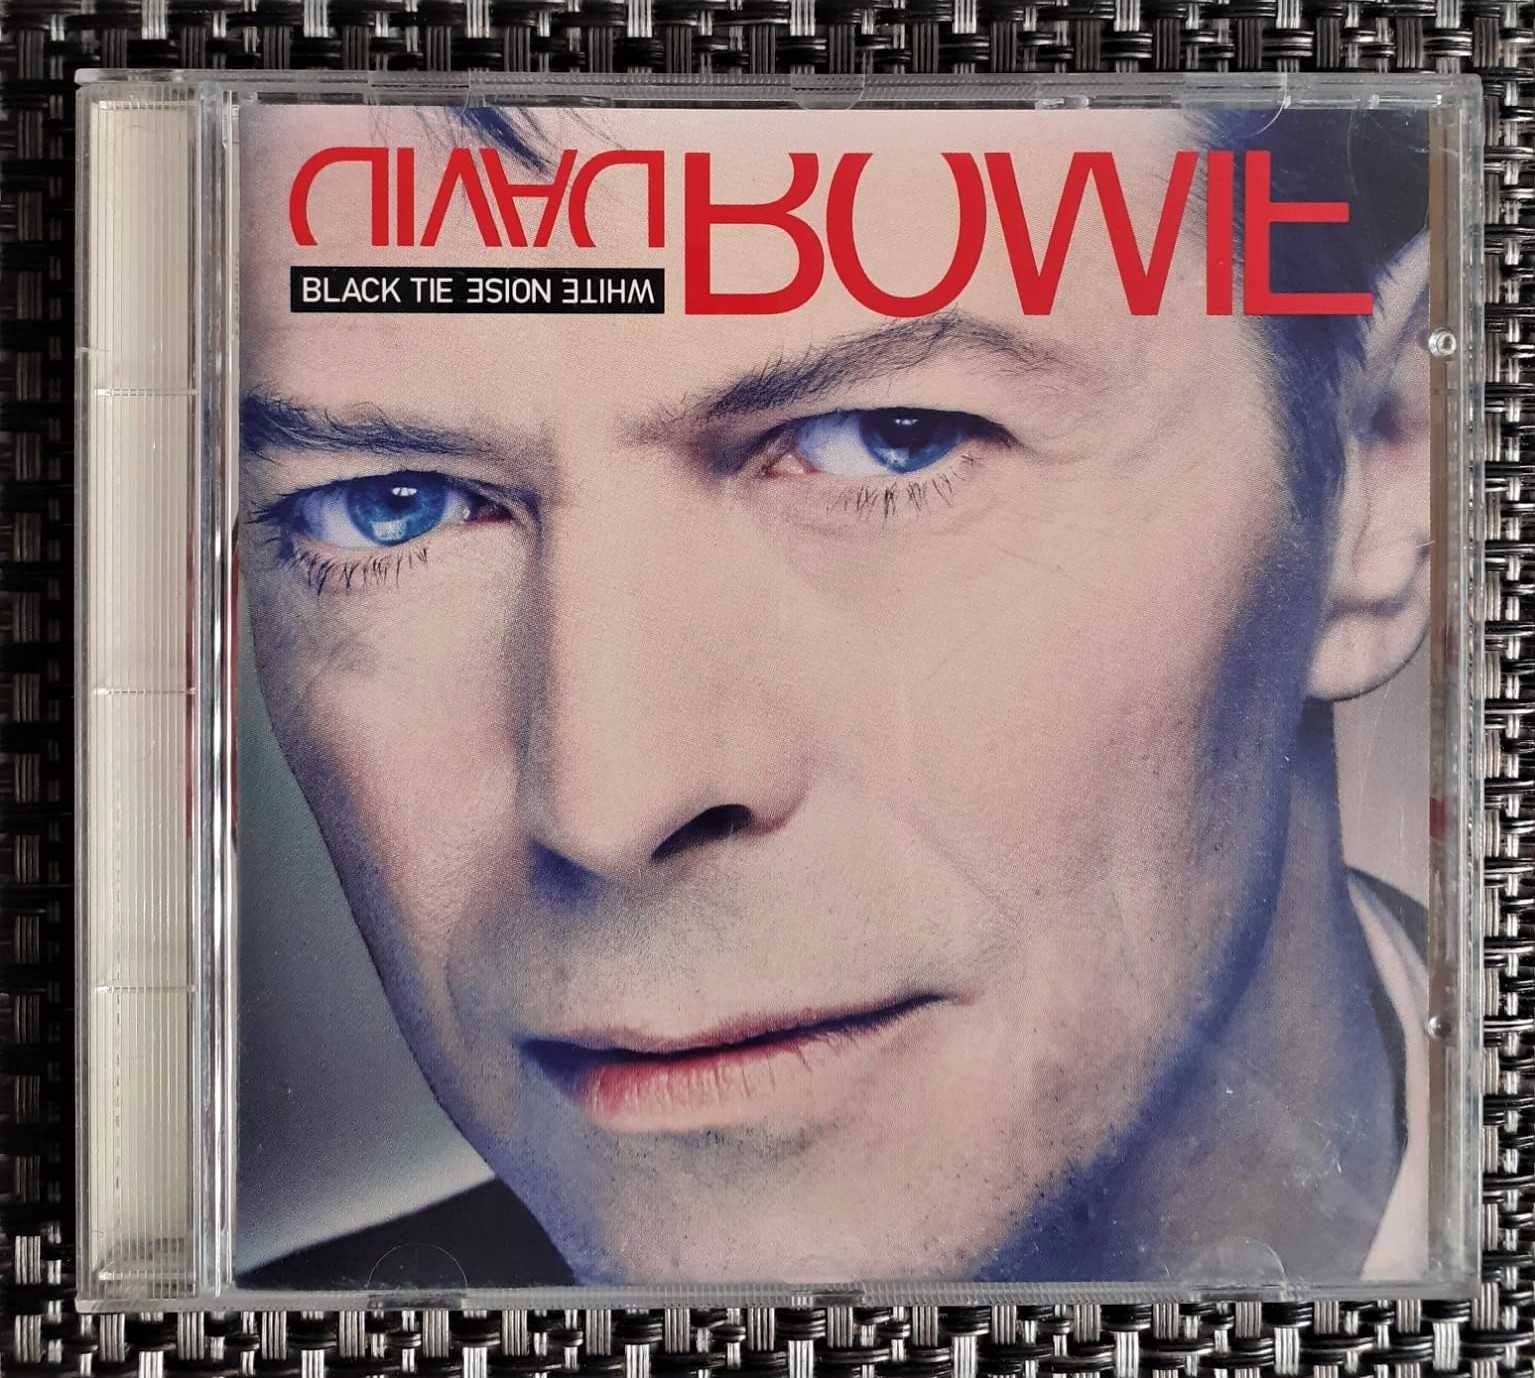 David Bowie - 8 CDs - 1 Cassete - Raros - Muito Bom Estado